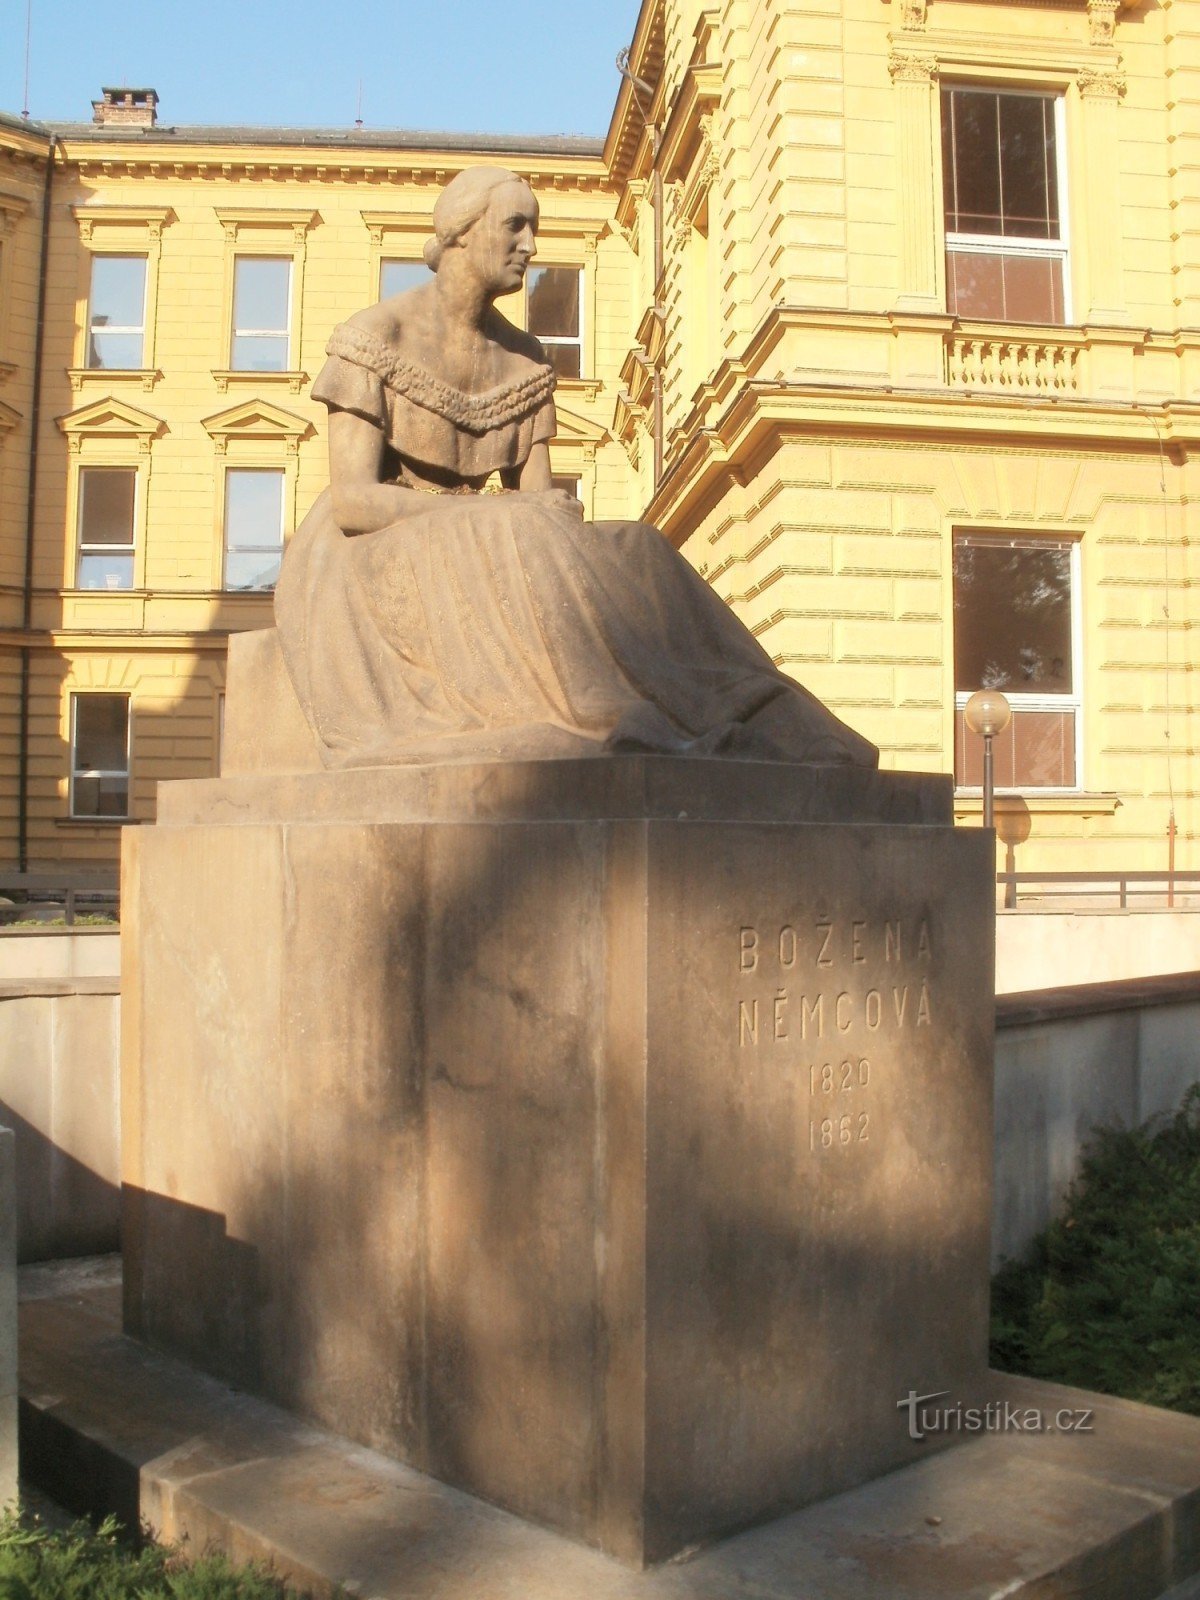 Hradec Králové - Božena Němcováの像